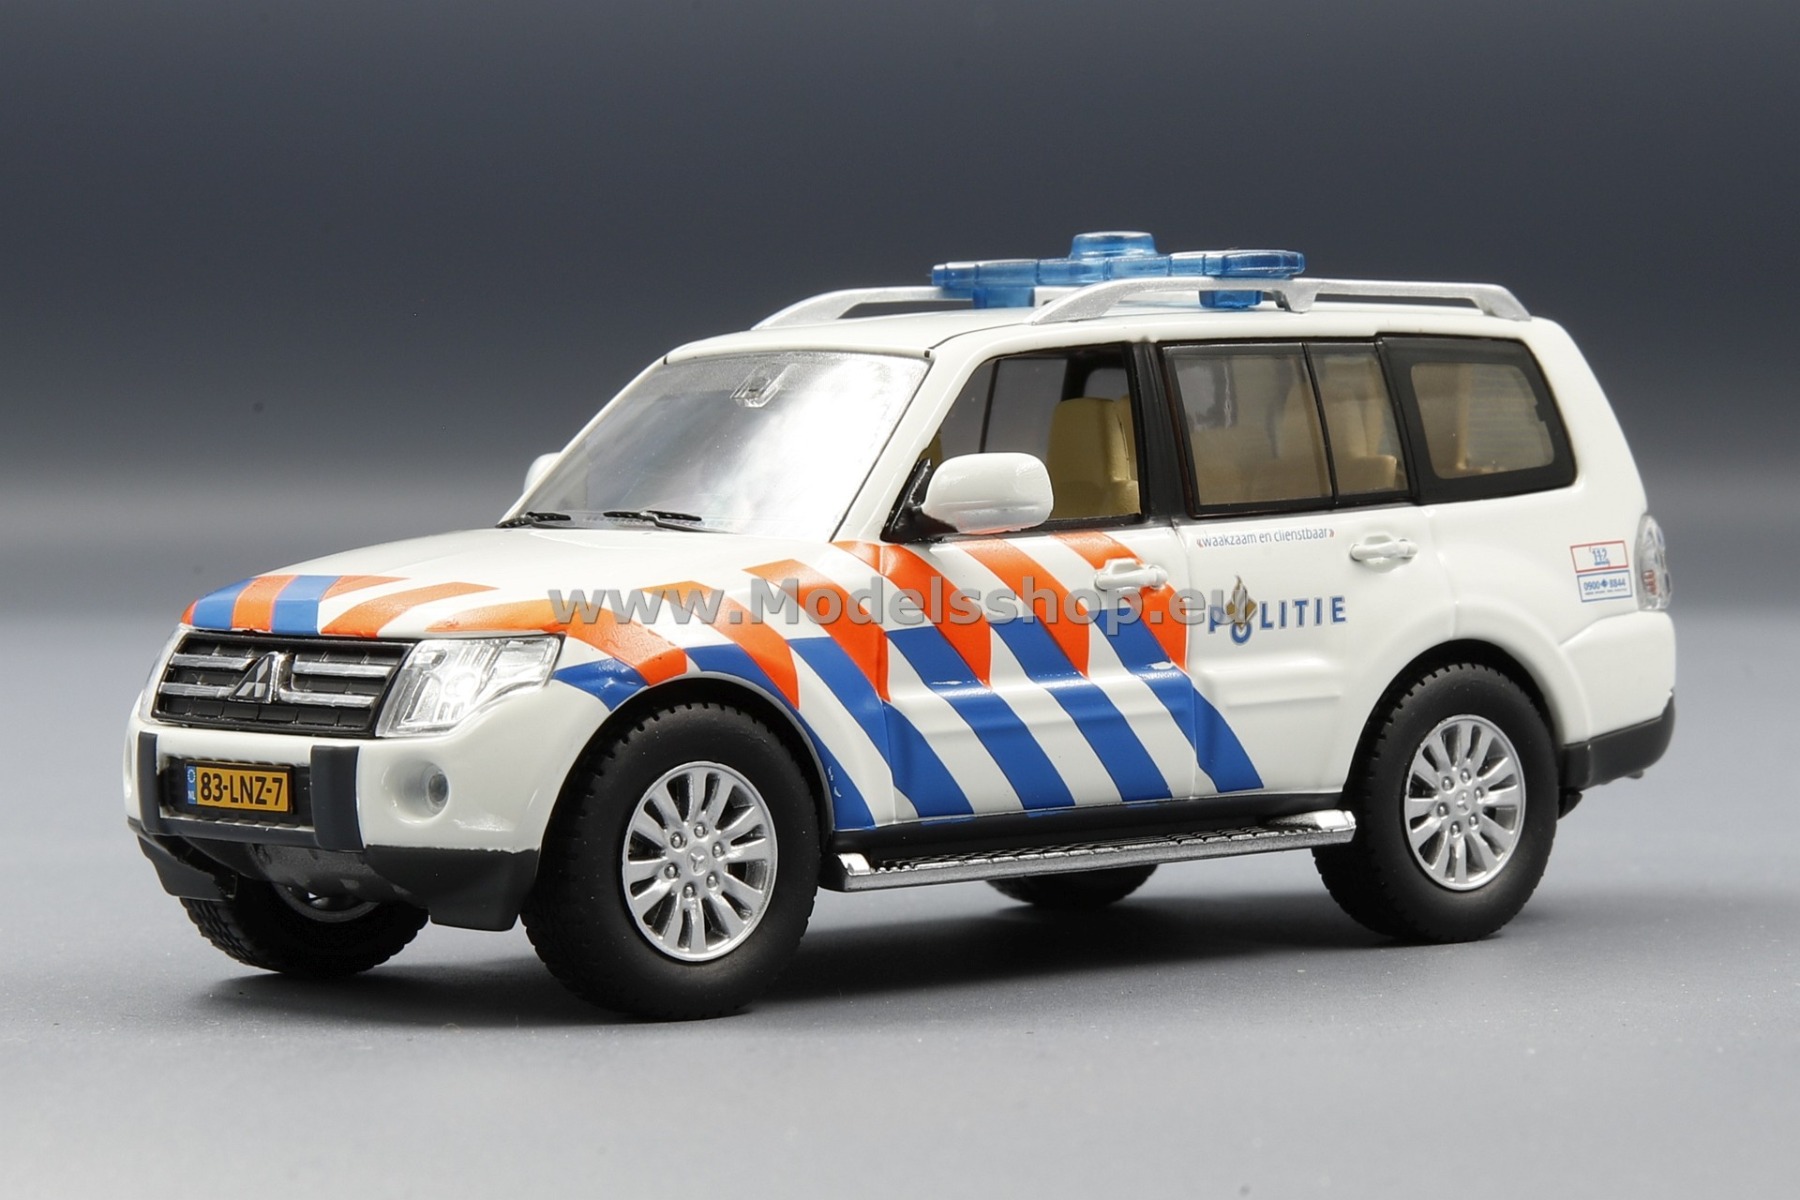 Mitsubishi Pajero 2010, Dutch Police